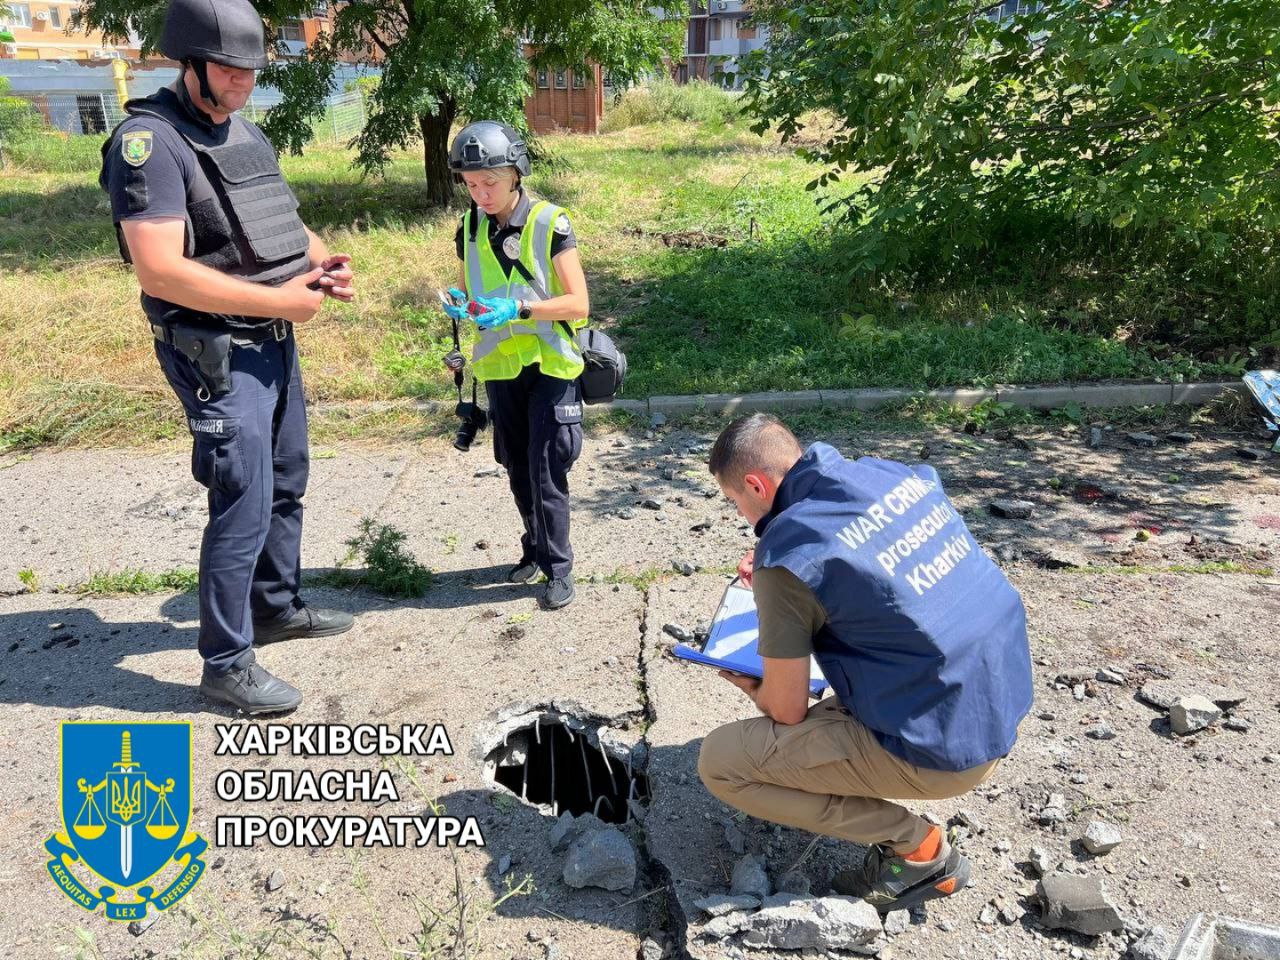 Військові РФ обстріляли житловий масив Харкова – розпочато провадження